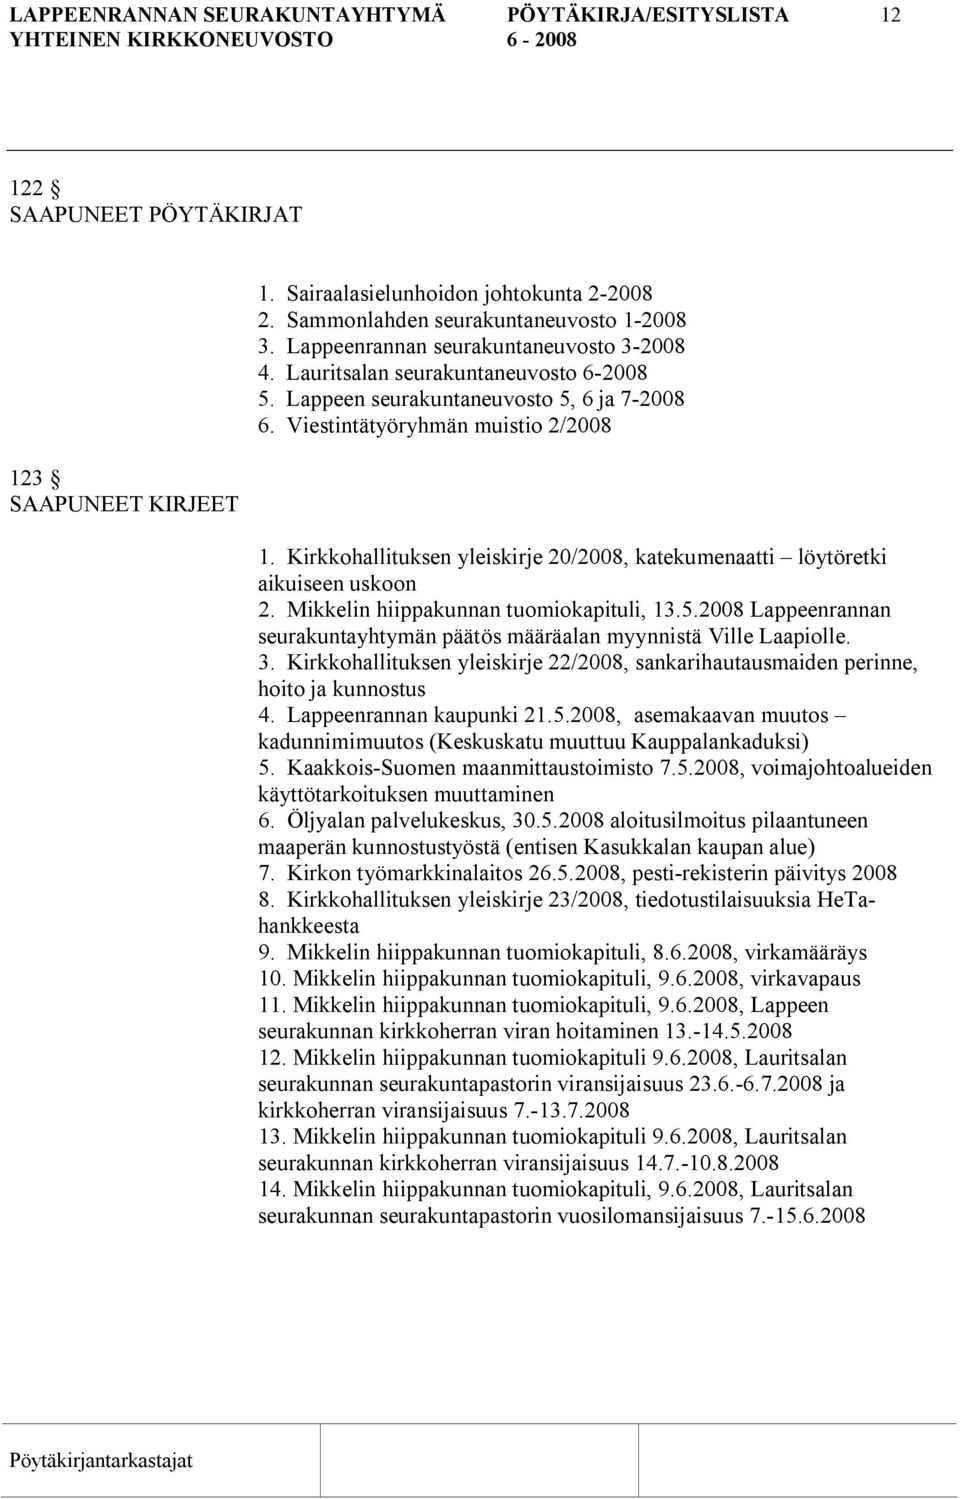 Kirkkohallituksen yleiskirje 20/2008, katekumenaatti löytöretki aikuiseen uskoon 2. Mikkelin hiippakunnan tuomiokapituli, 13.5.